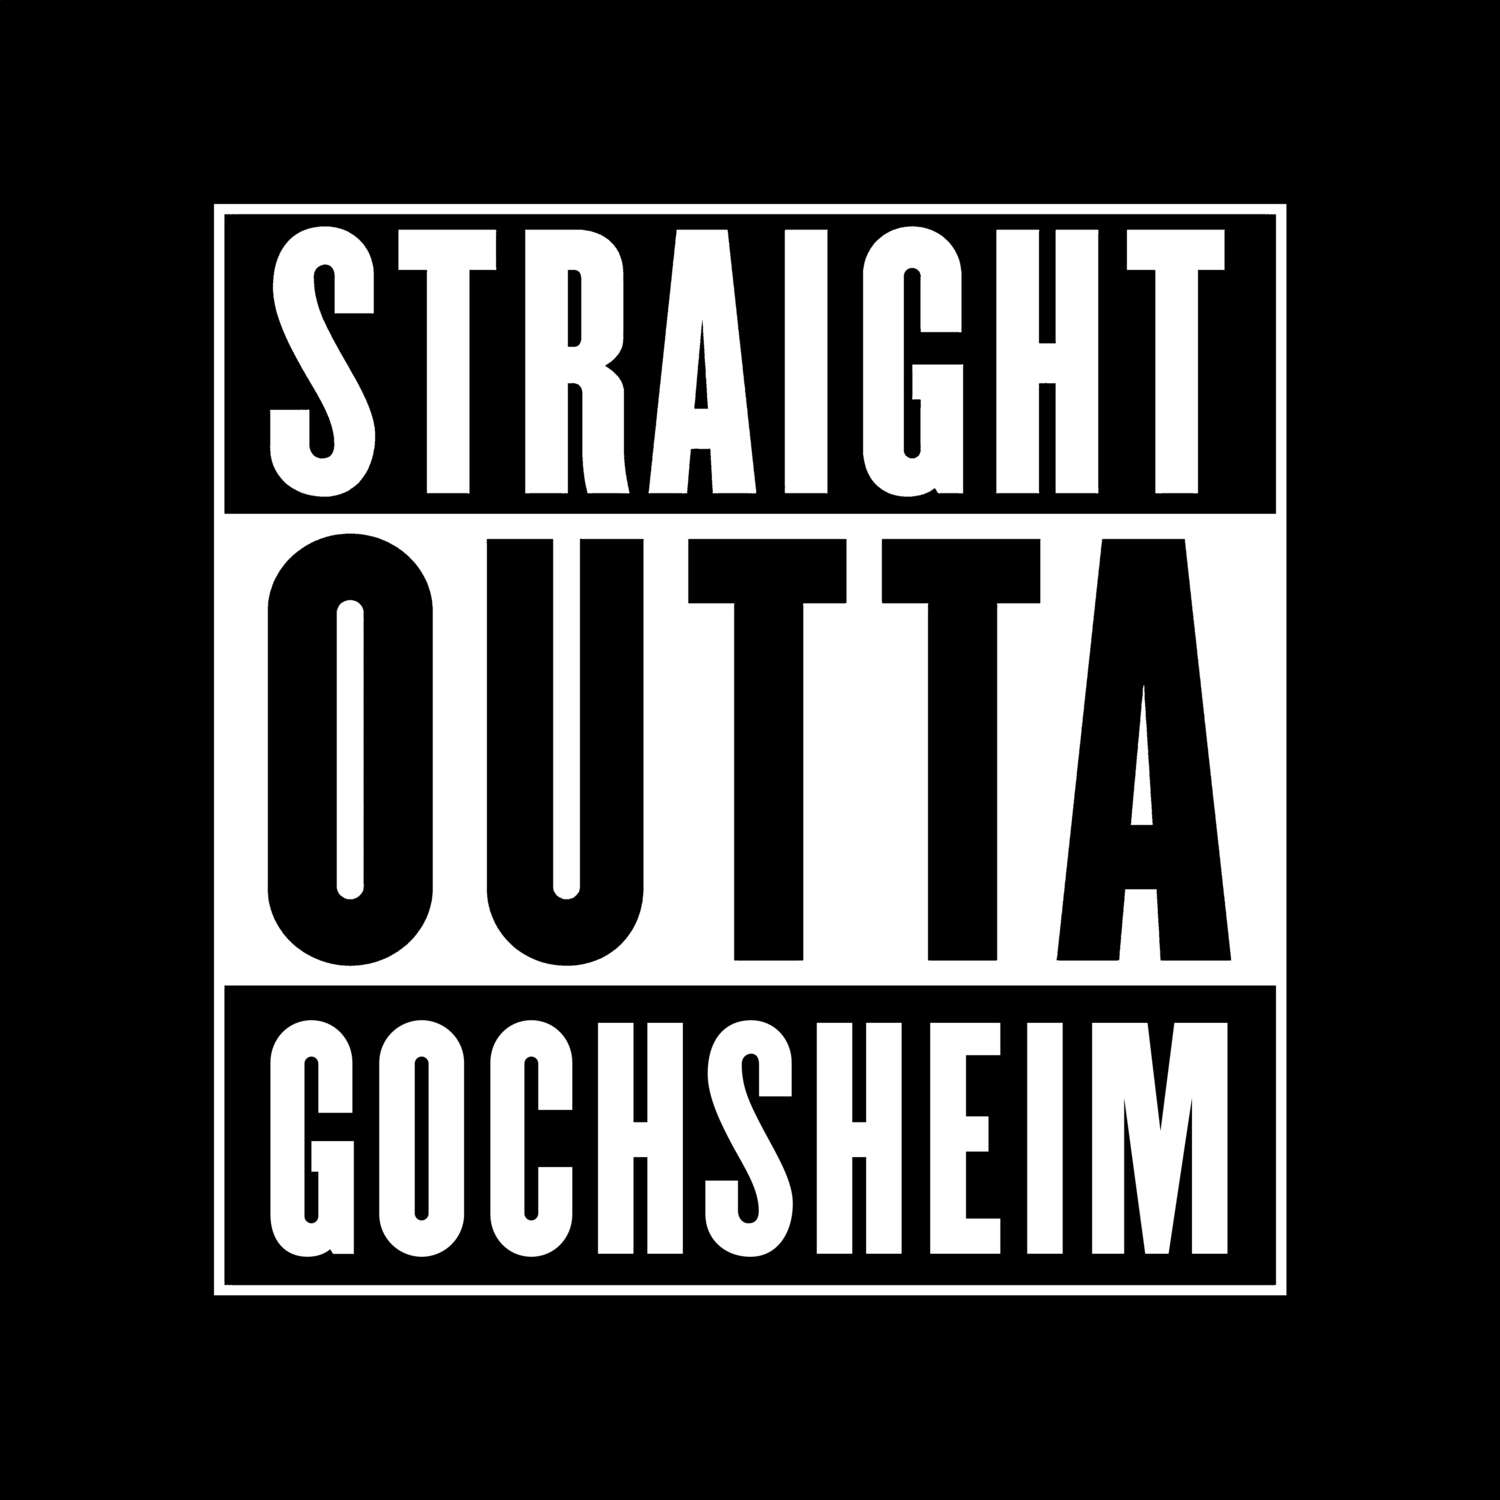 Gochsheim T-Shirt »Straight Outta«